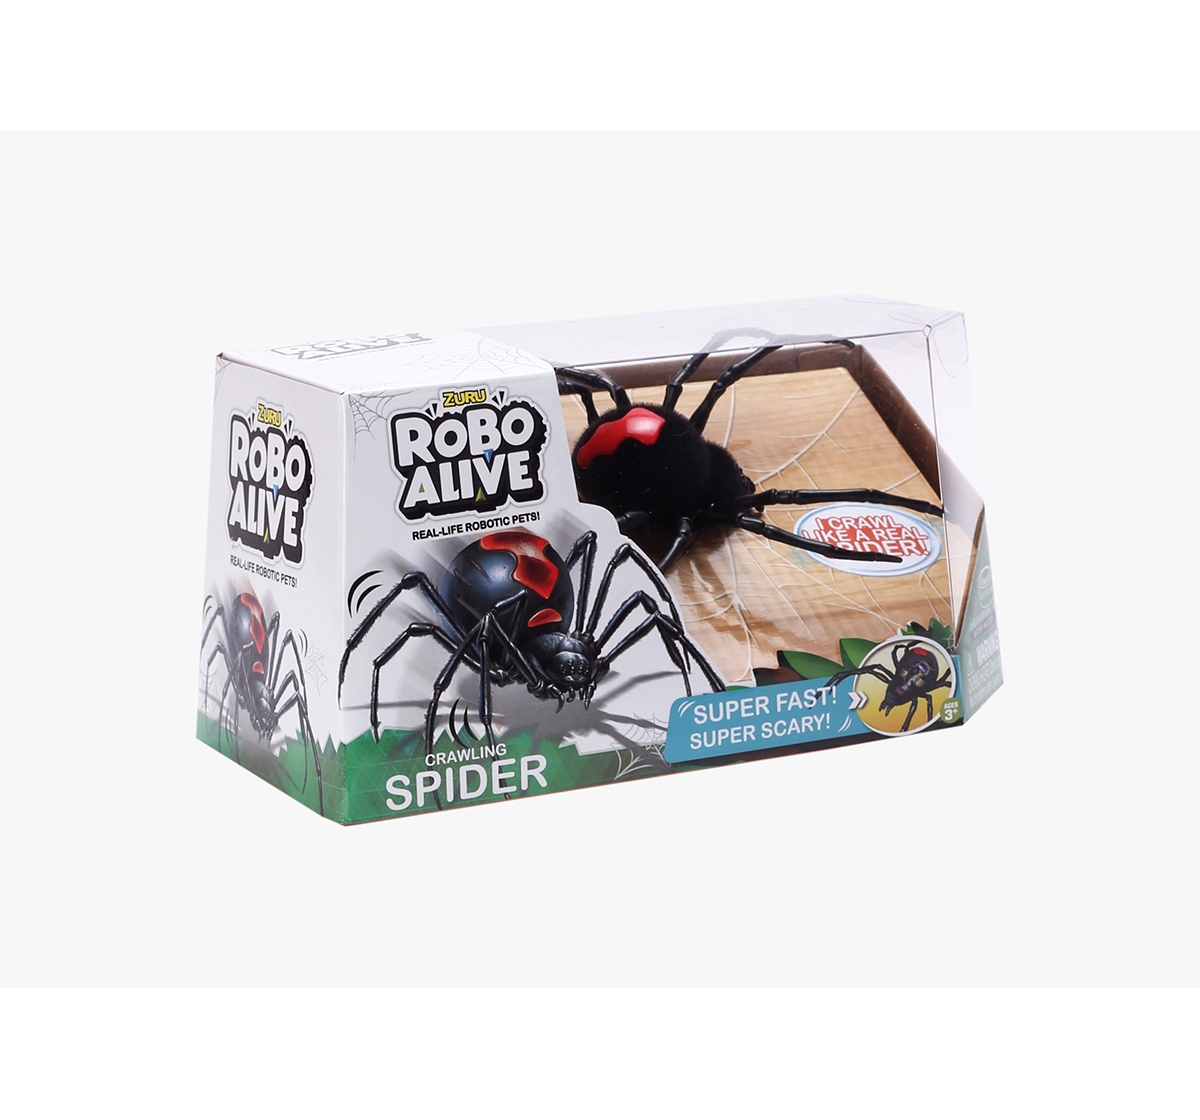 Robo Alive | Zuru Robo Alive Boys Creepy Spider Robotics for Kids age 3Y+ (Black) 1